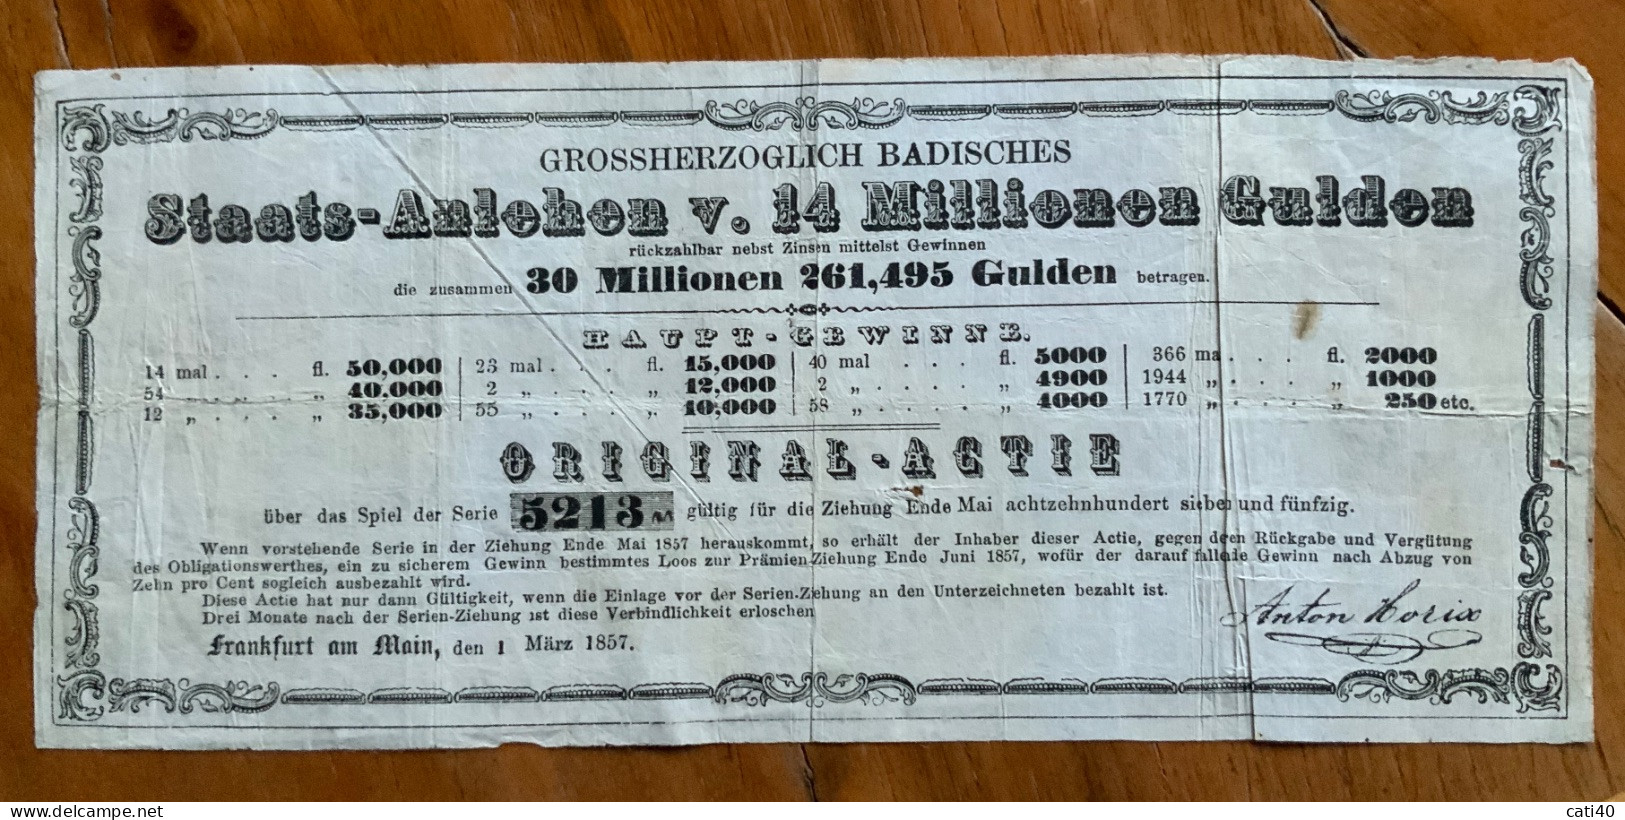 FRANKFURT AM MAIN 1 MARZ 1857 - GROSSHERZOGLICH BADISCHES -  STAATS - ANLEHEN ORIGINAL - ACTIE - 14 MILIONEN GULDEN - Transport